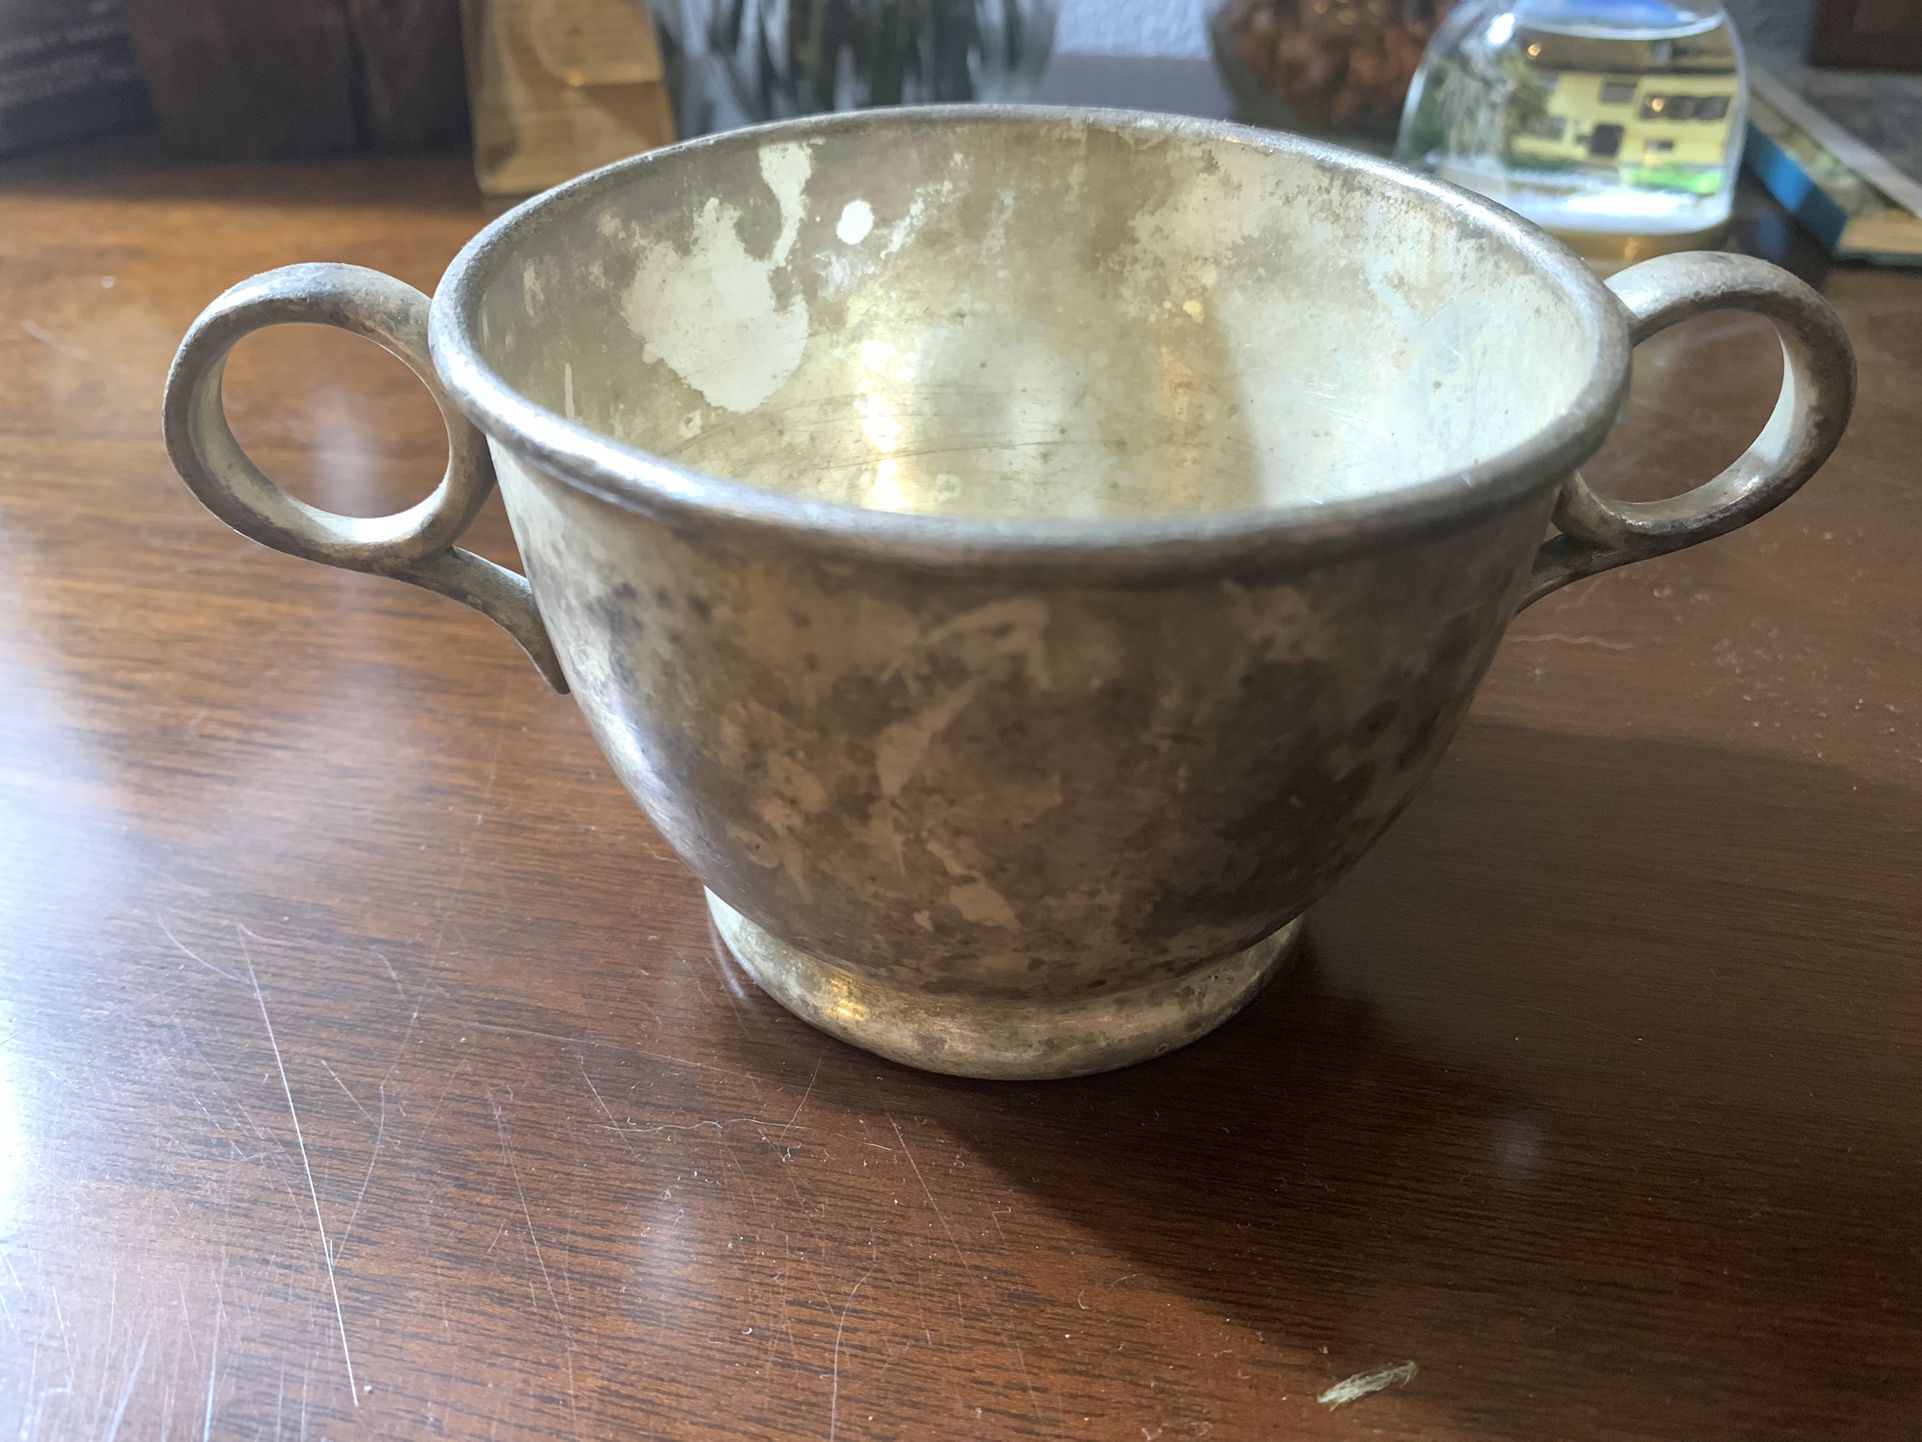 Vintage Silver Cup